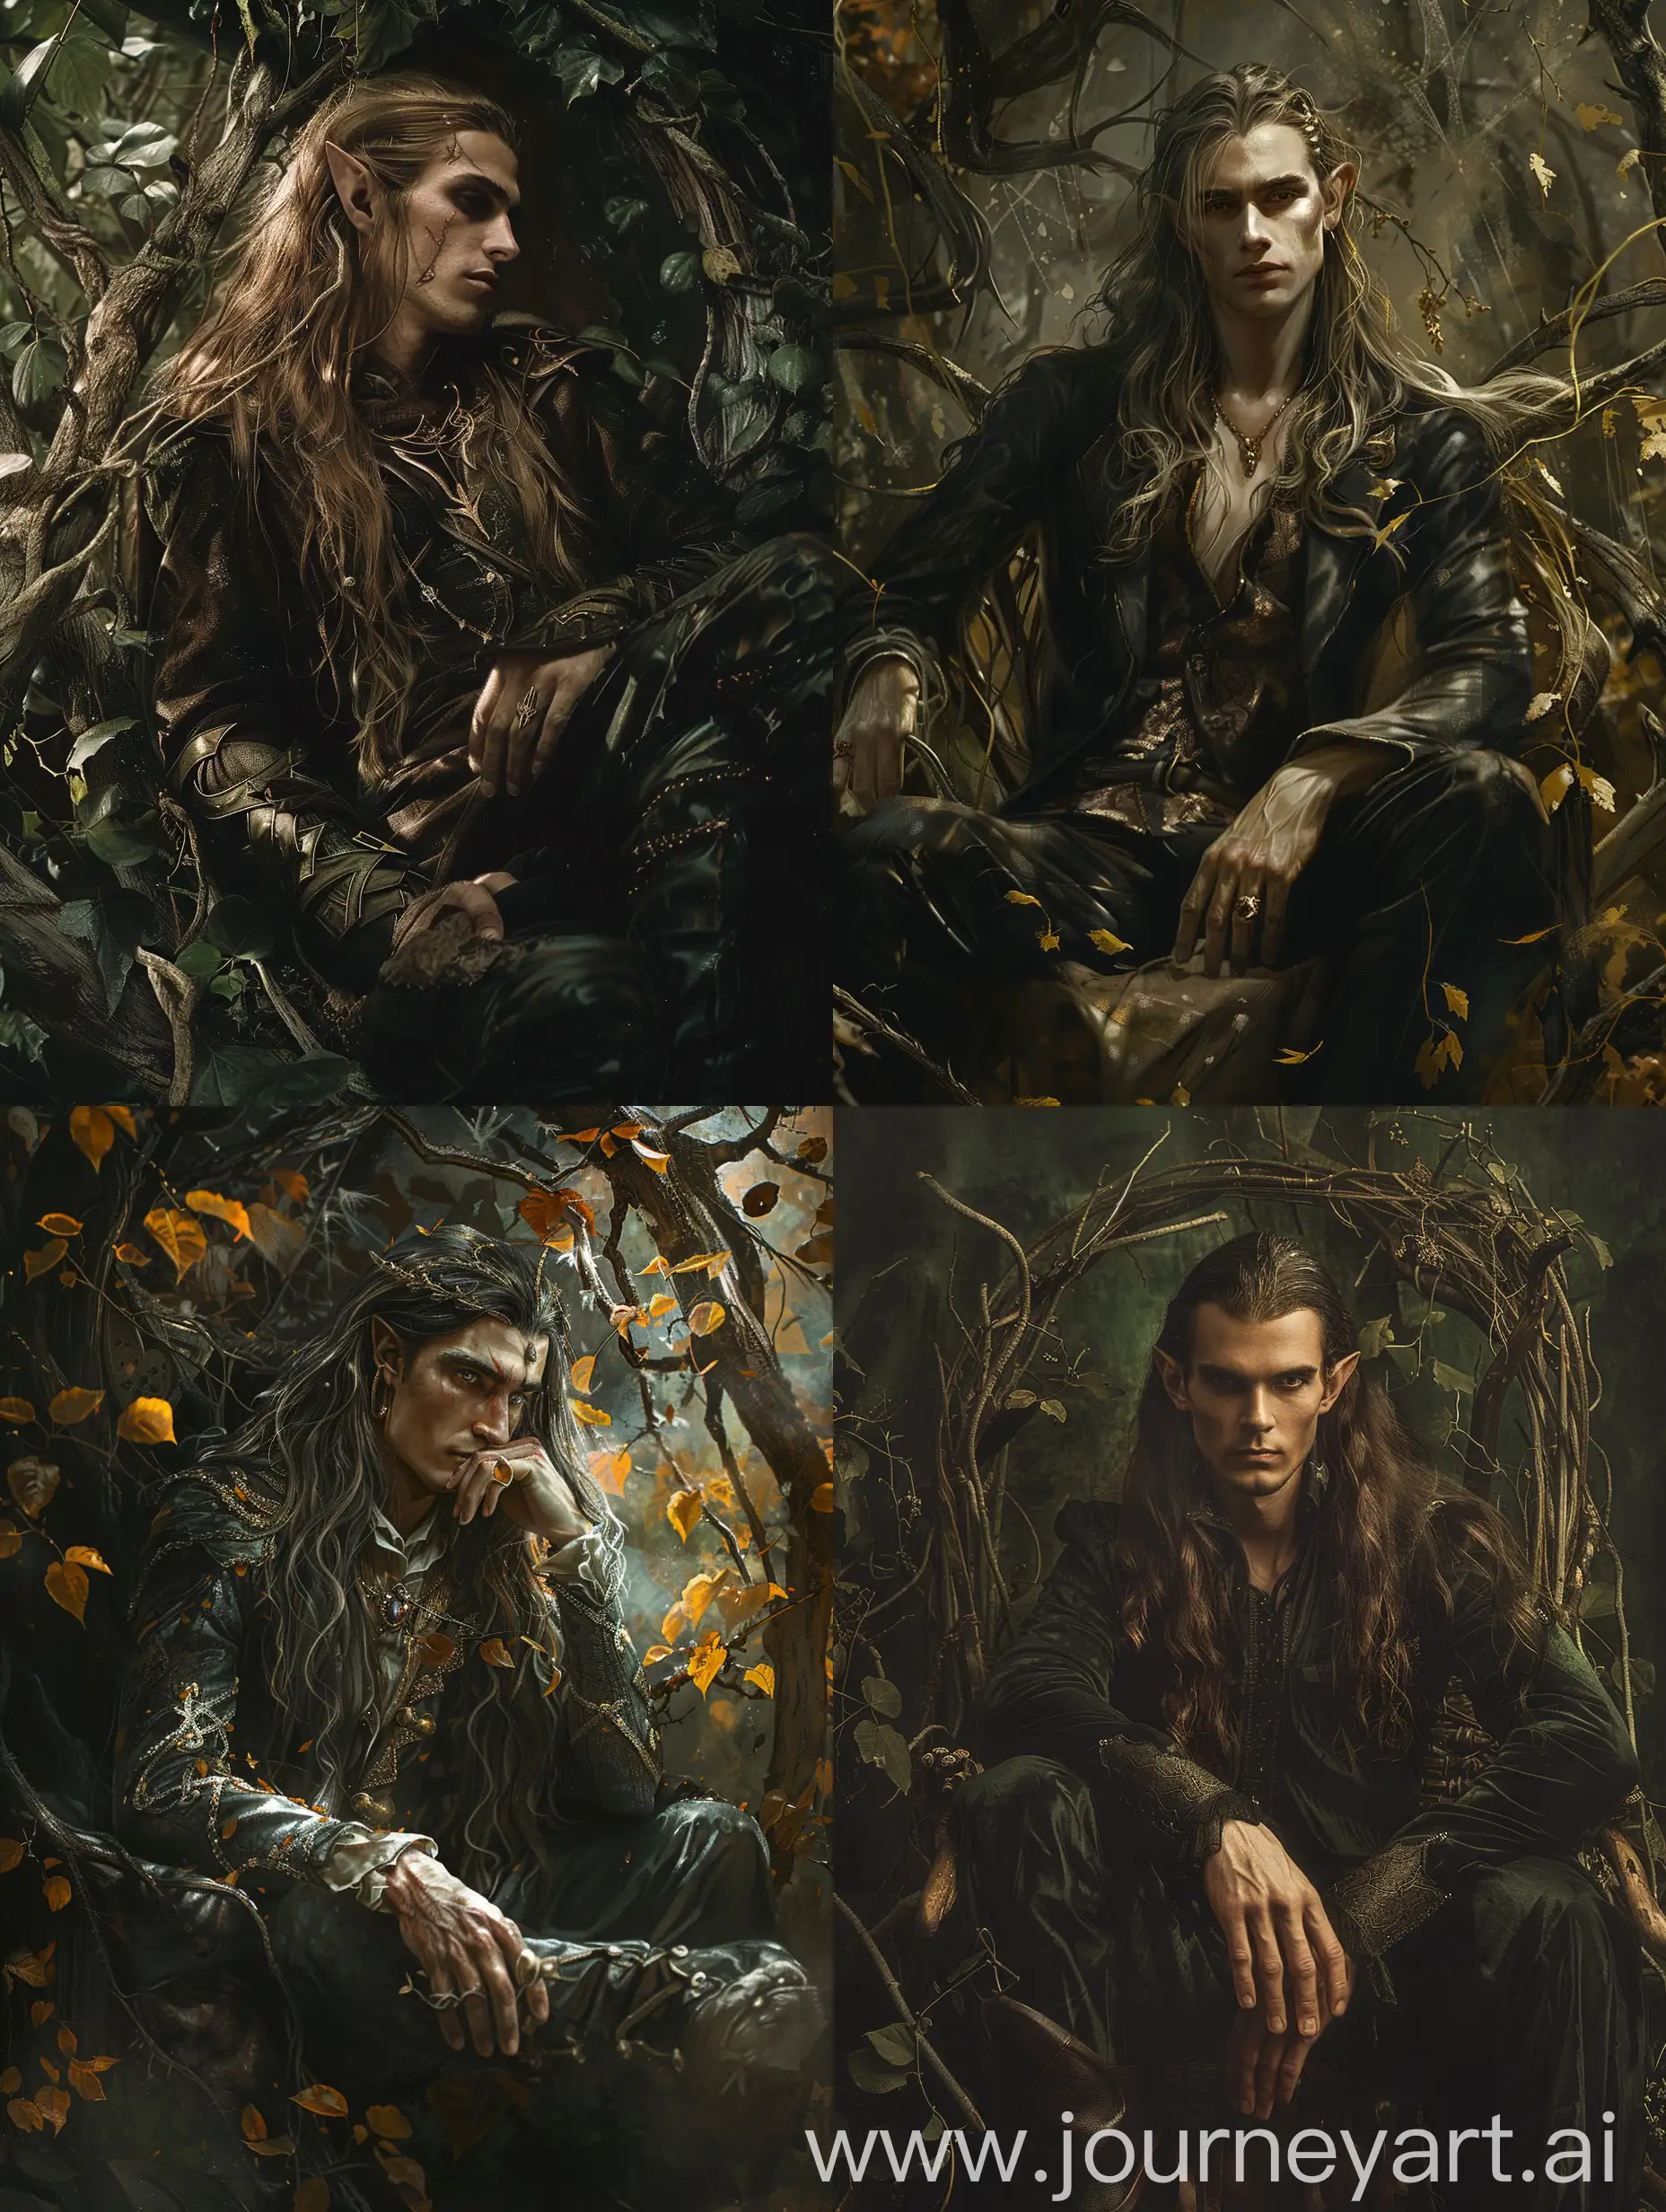 Парень-эльф с длинными волосами сидит в роскованной позе на троне из веток и листьев, принц, тёмный взгляд, фэнтэзи, динамичный ракурс